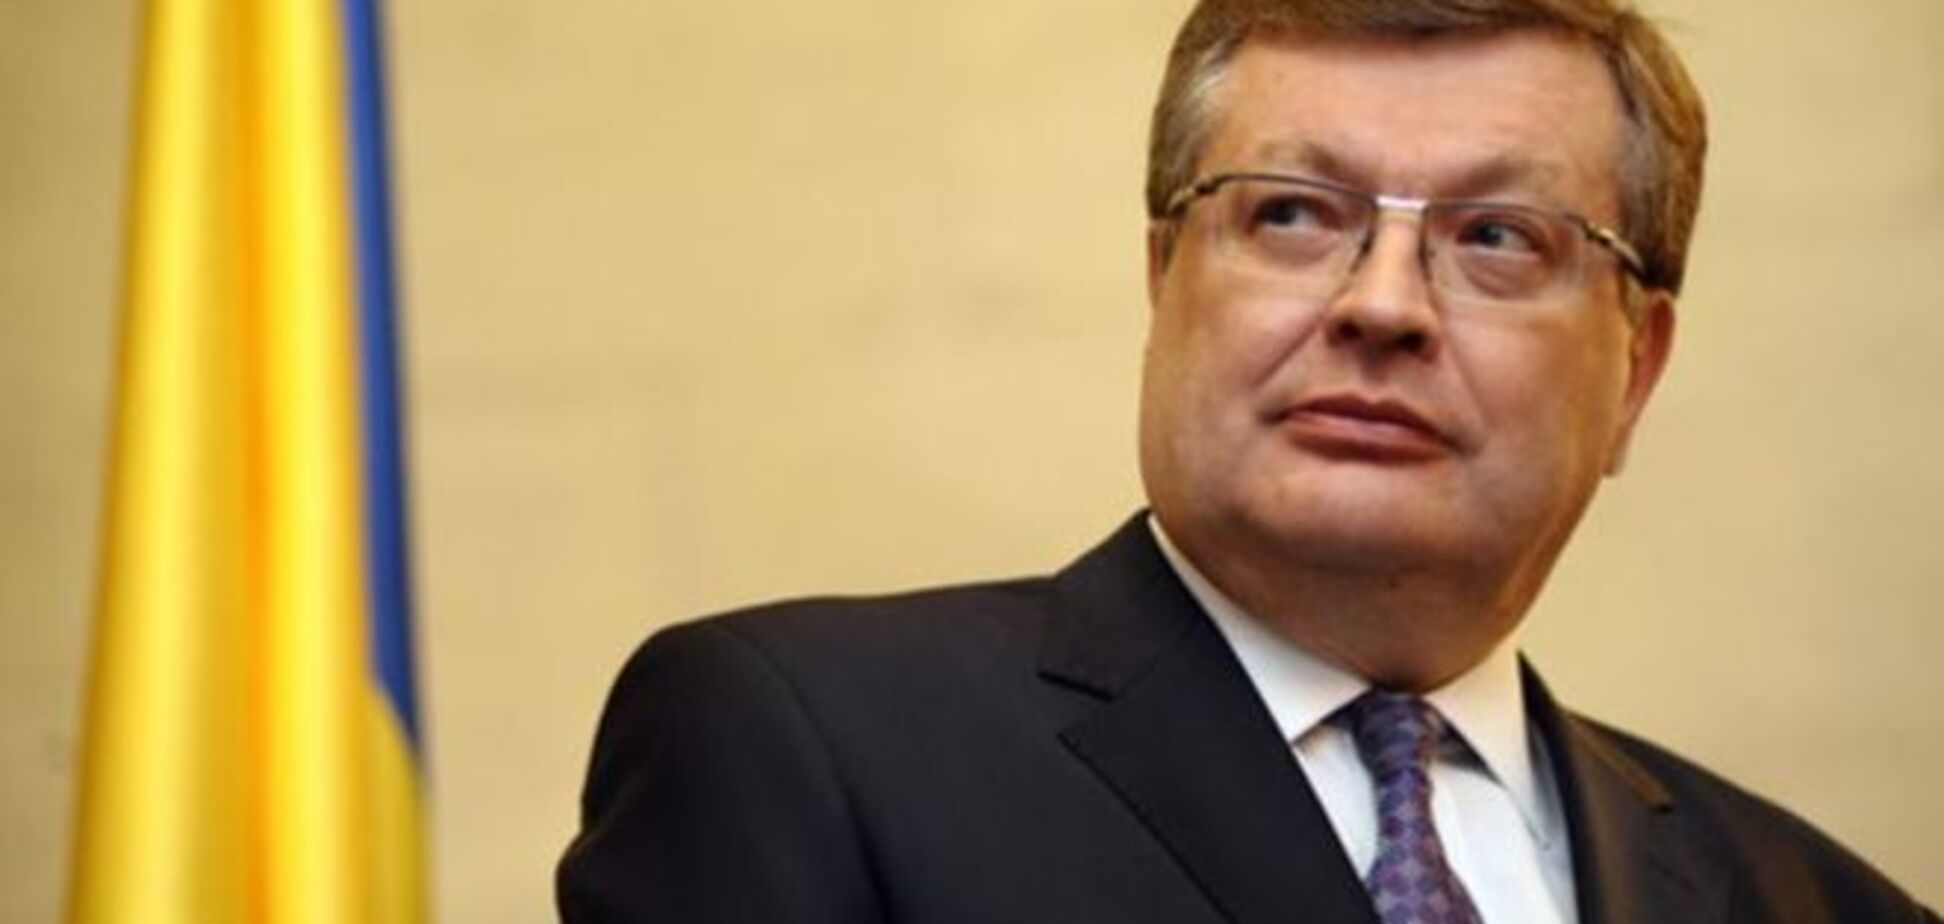 Грищенко: дипломатія повинна перестати бути майданчиком для піару